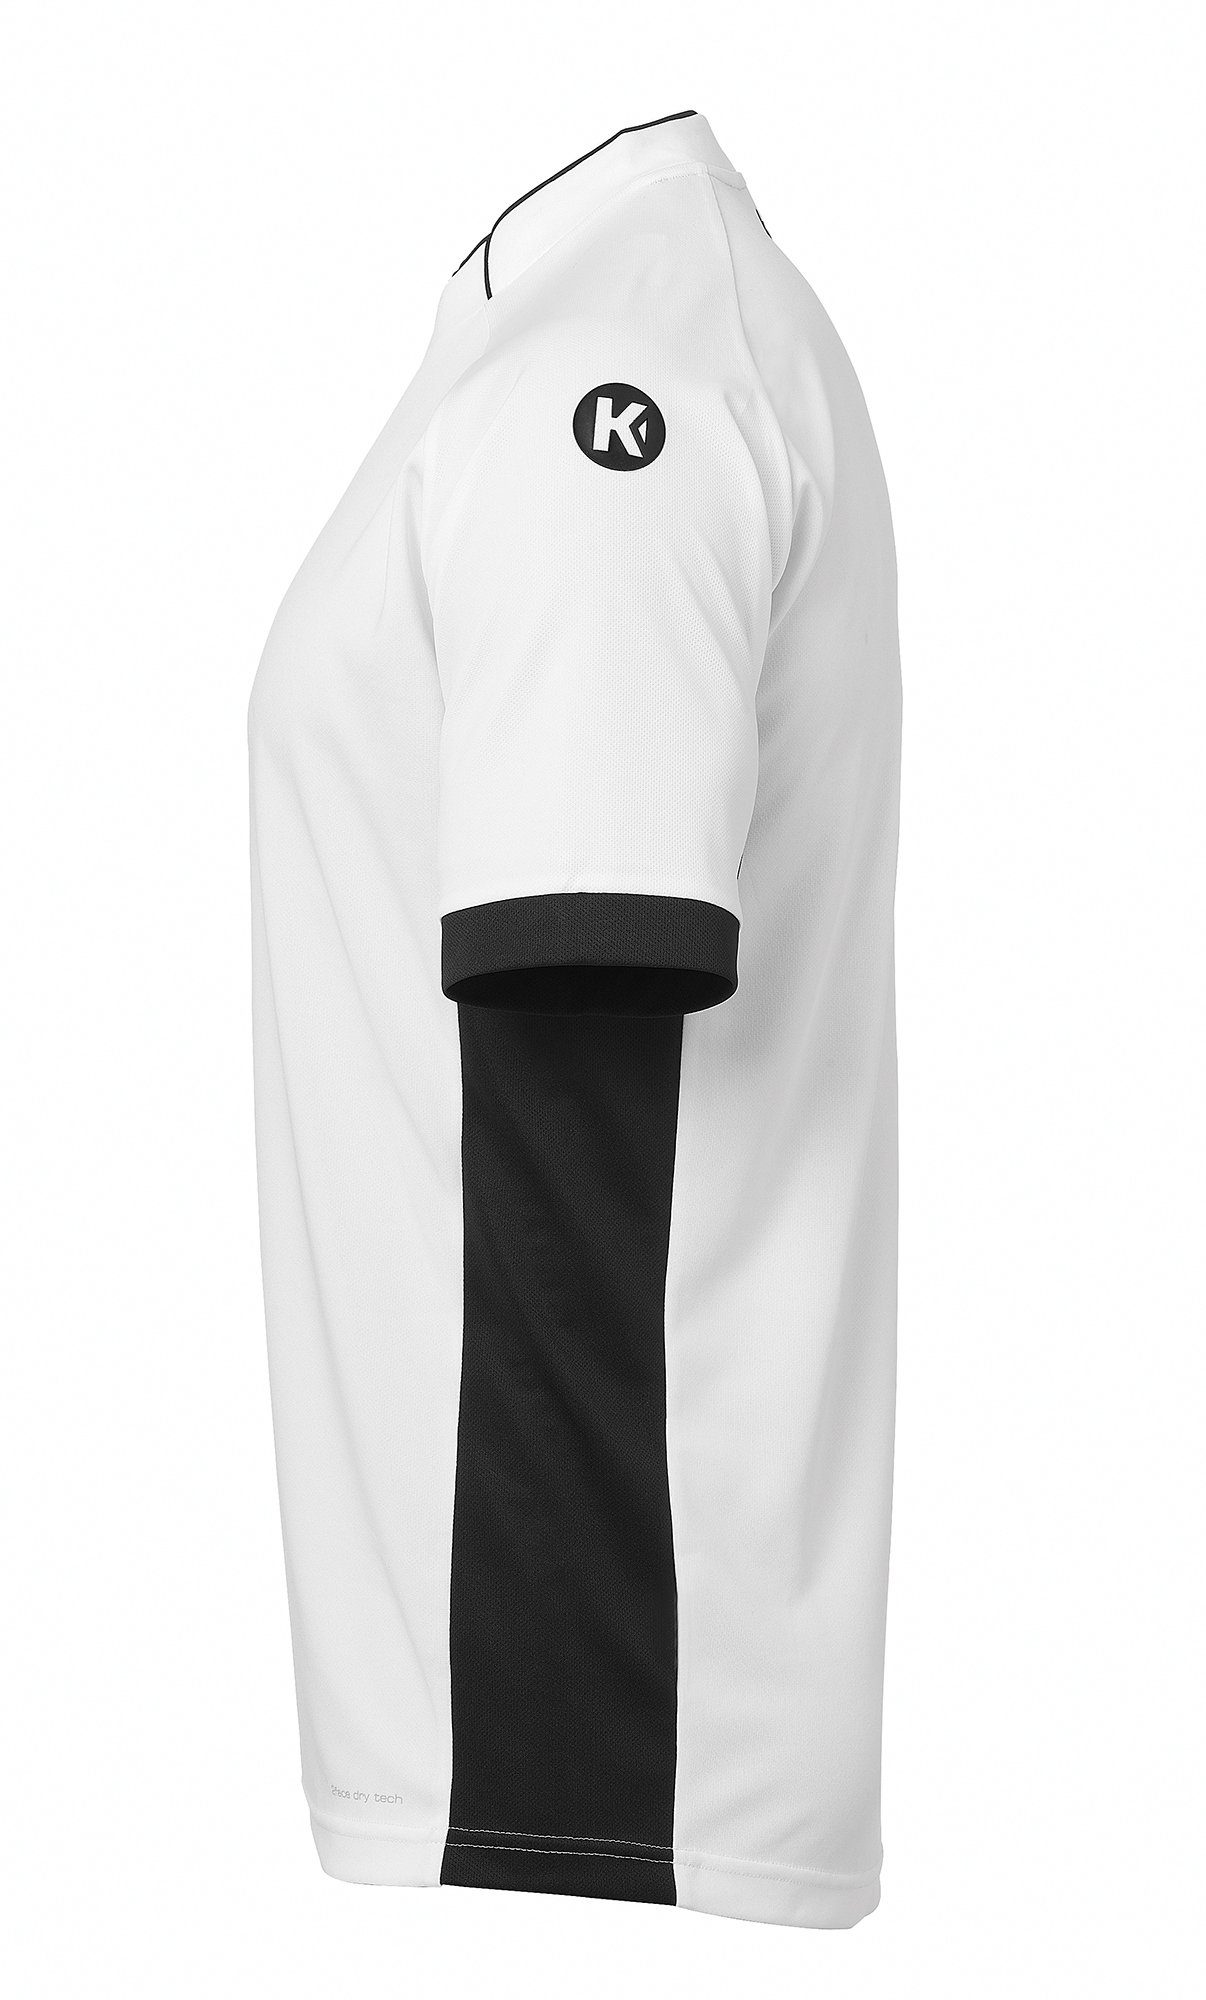 TRIKOT Kempa Kempa Trainingsshirt PRIME weiß/schwarz Shirt schnelltrocknend